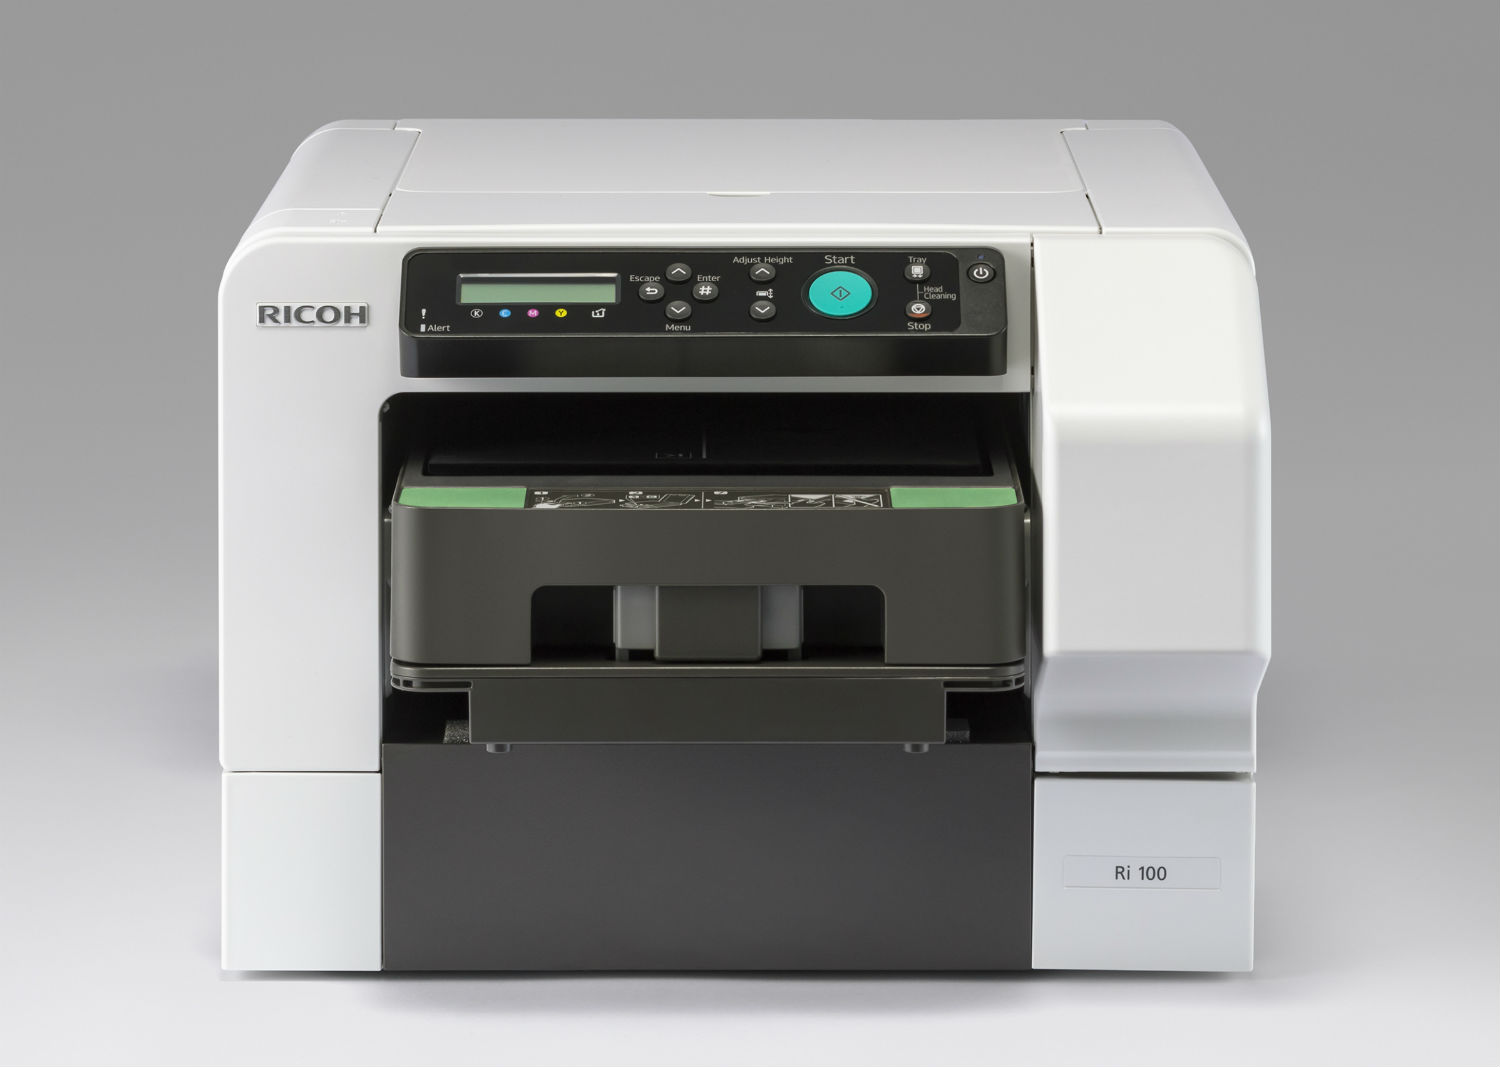 Новый принтер Ricoh - Ri 100